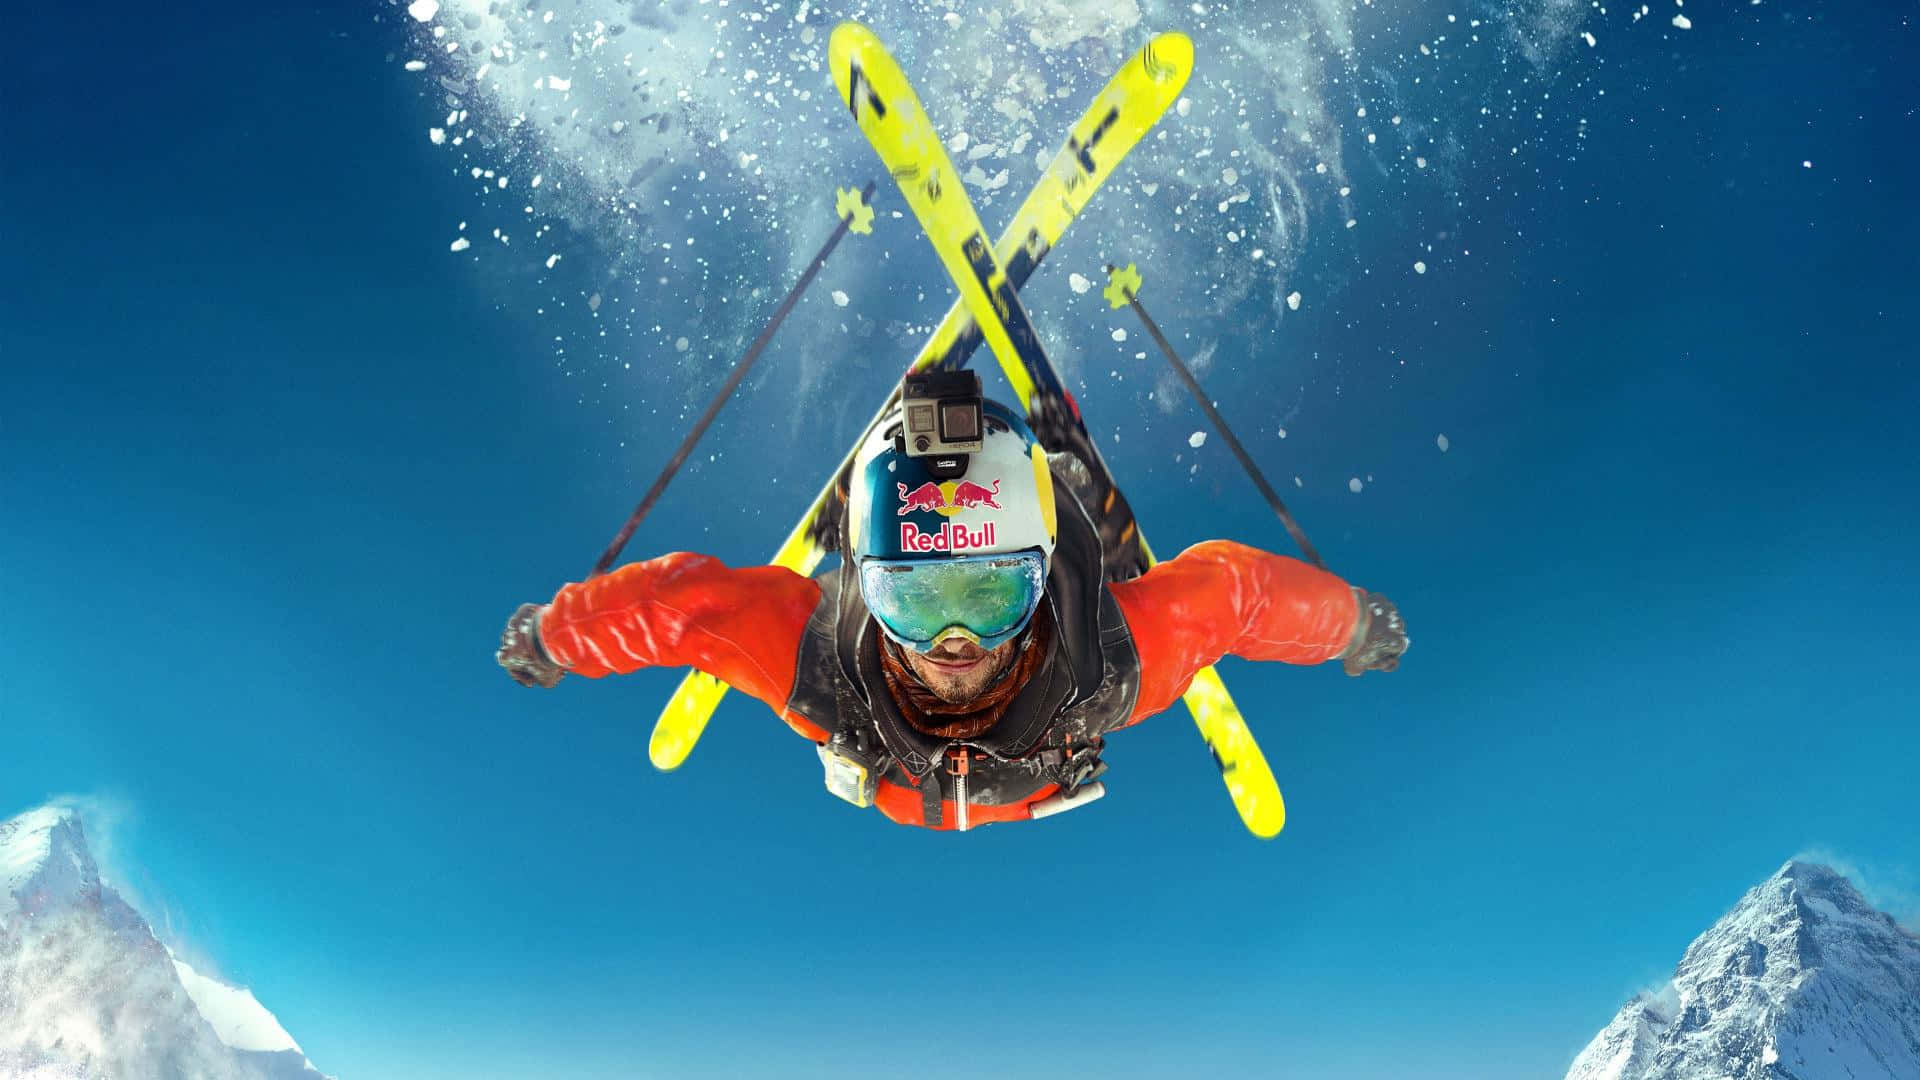 Vertical Steep Skiing Stunt Wallpaper